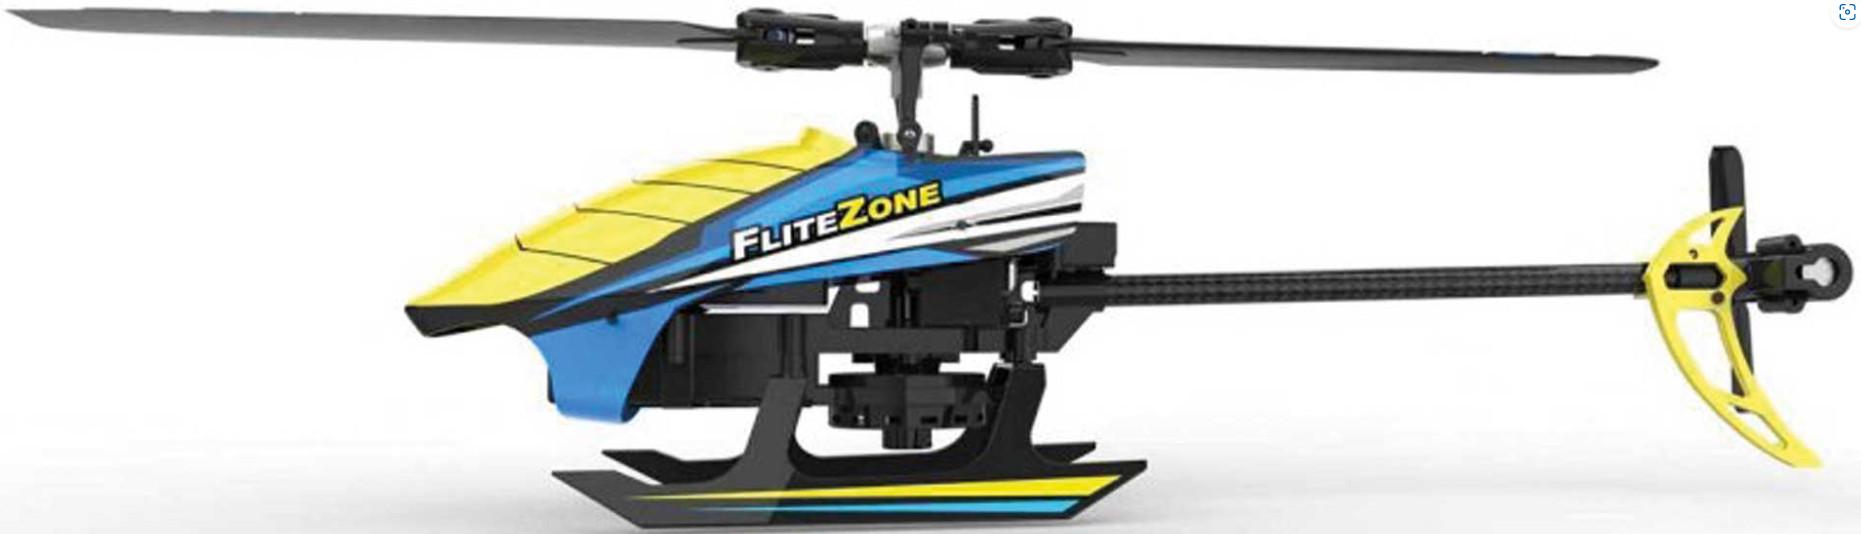 FliteZone 120X Helicopter RTF